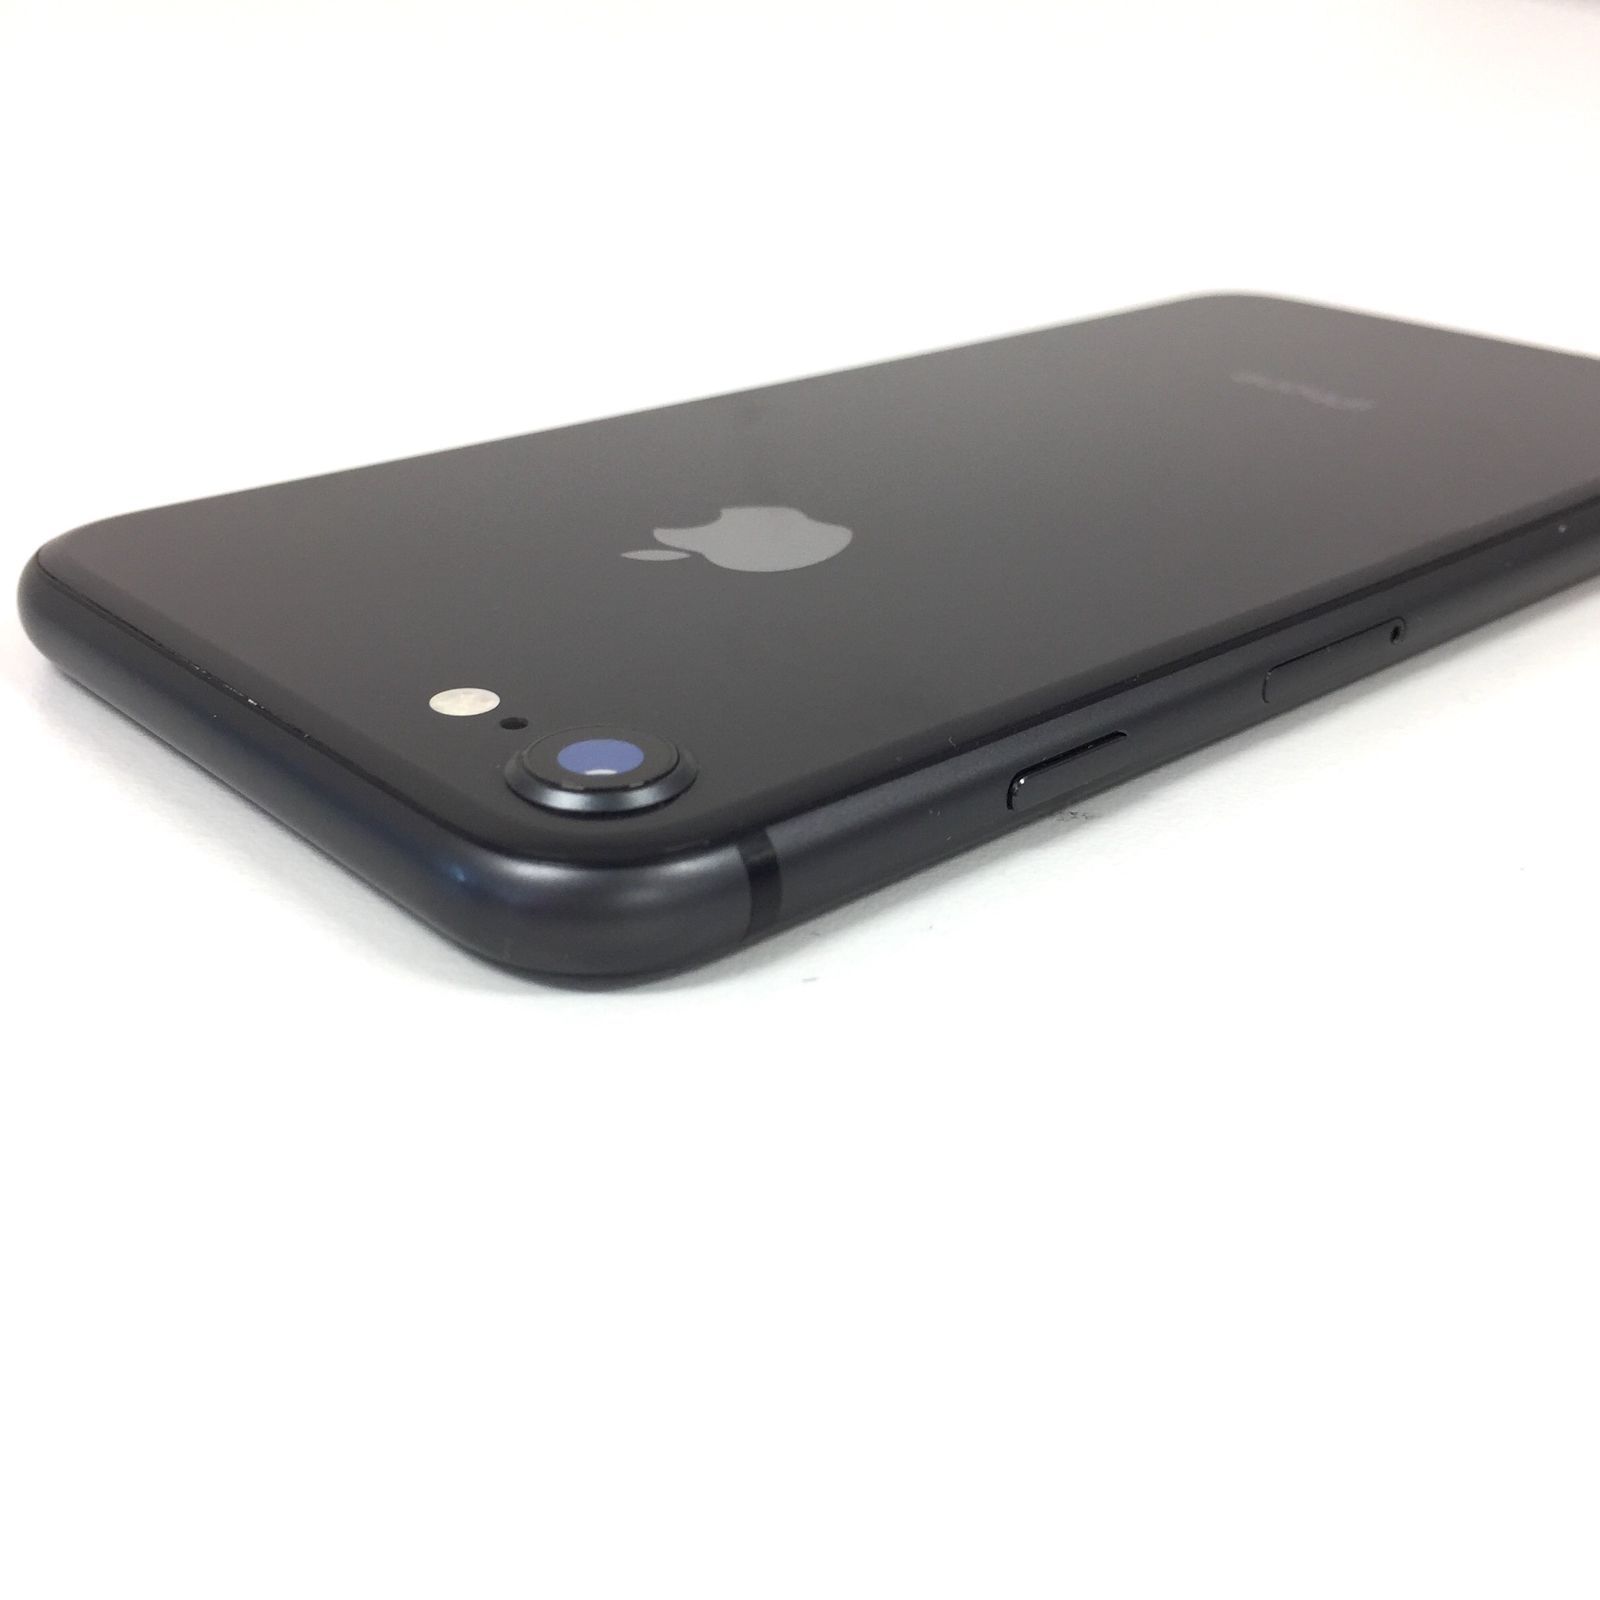 θ【SIMロック解除済み】iPhone 8 64GB スペースグレイ - メルカリ